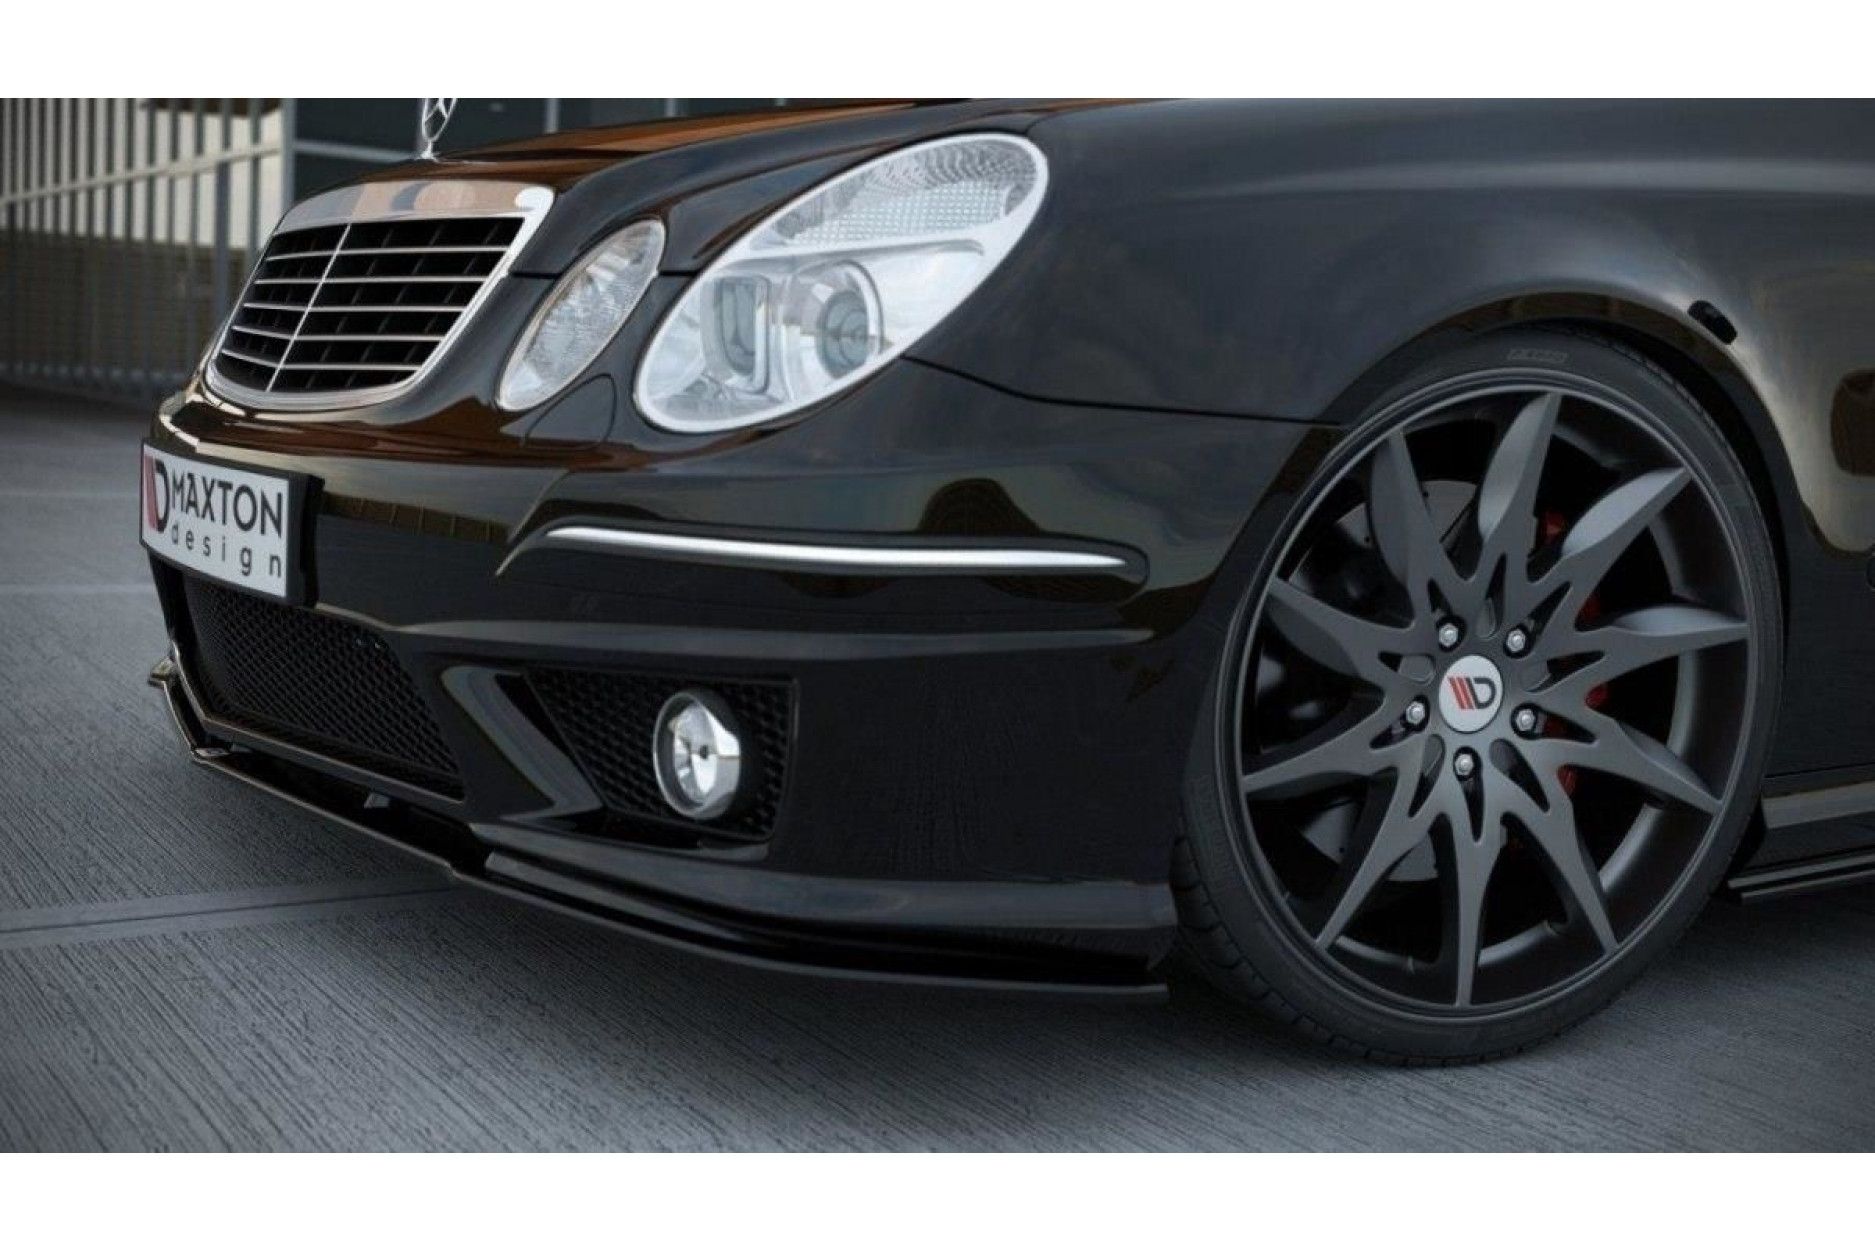 Maxton Design Frontlippe für Mercedes E-Klasse W211 E63 AMG Facelift  schwarz hochglanz - online kaufen bei CFD